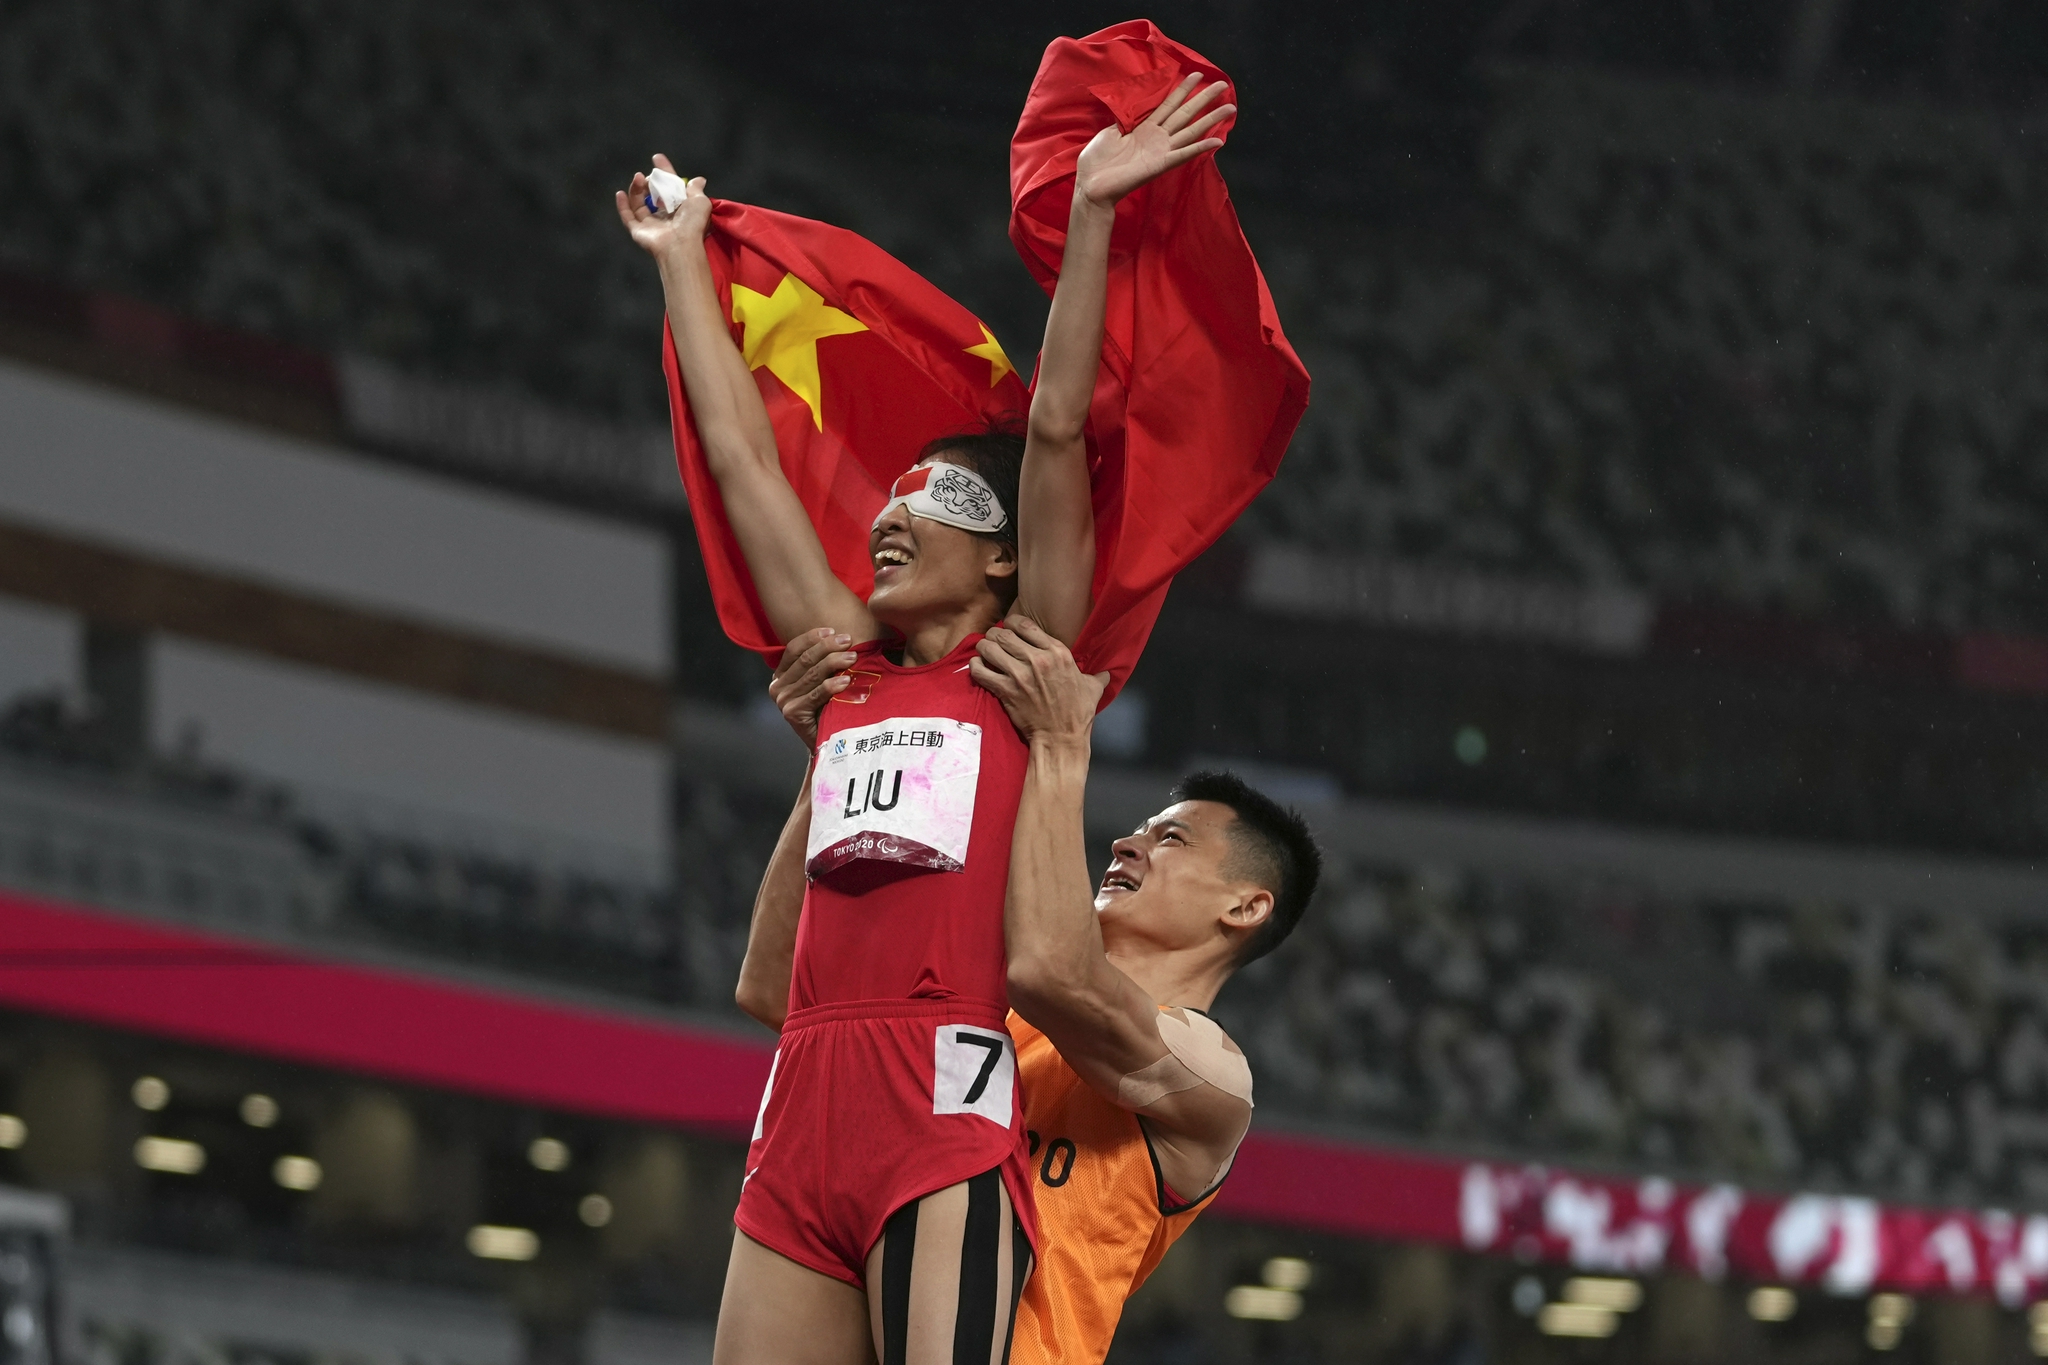 领跑员徐冬林高举盲人选手刘翠青。